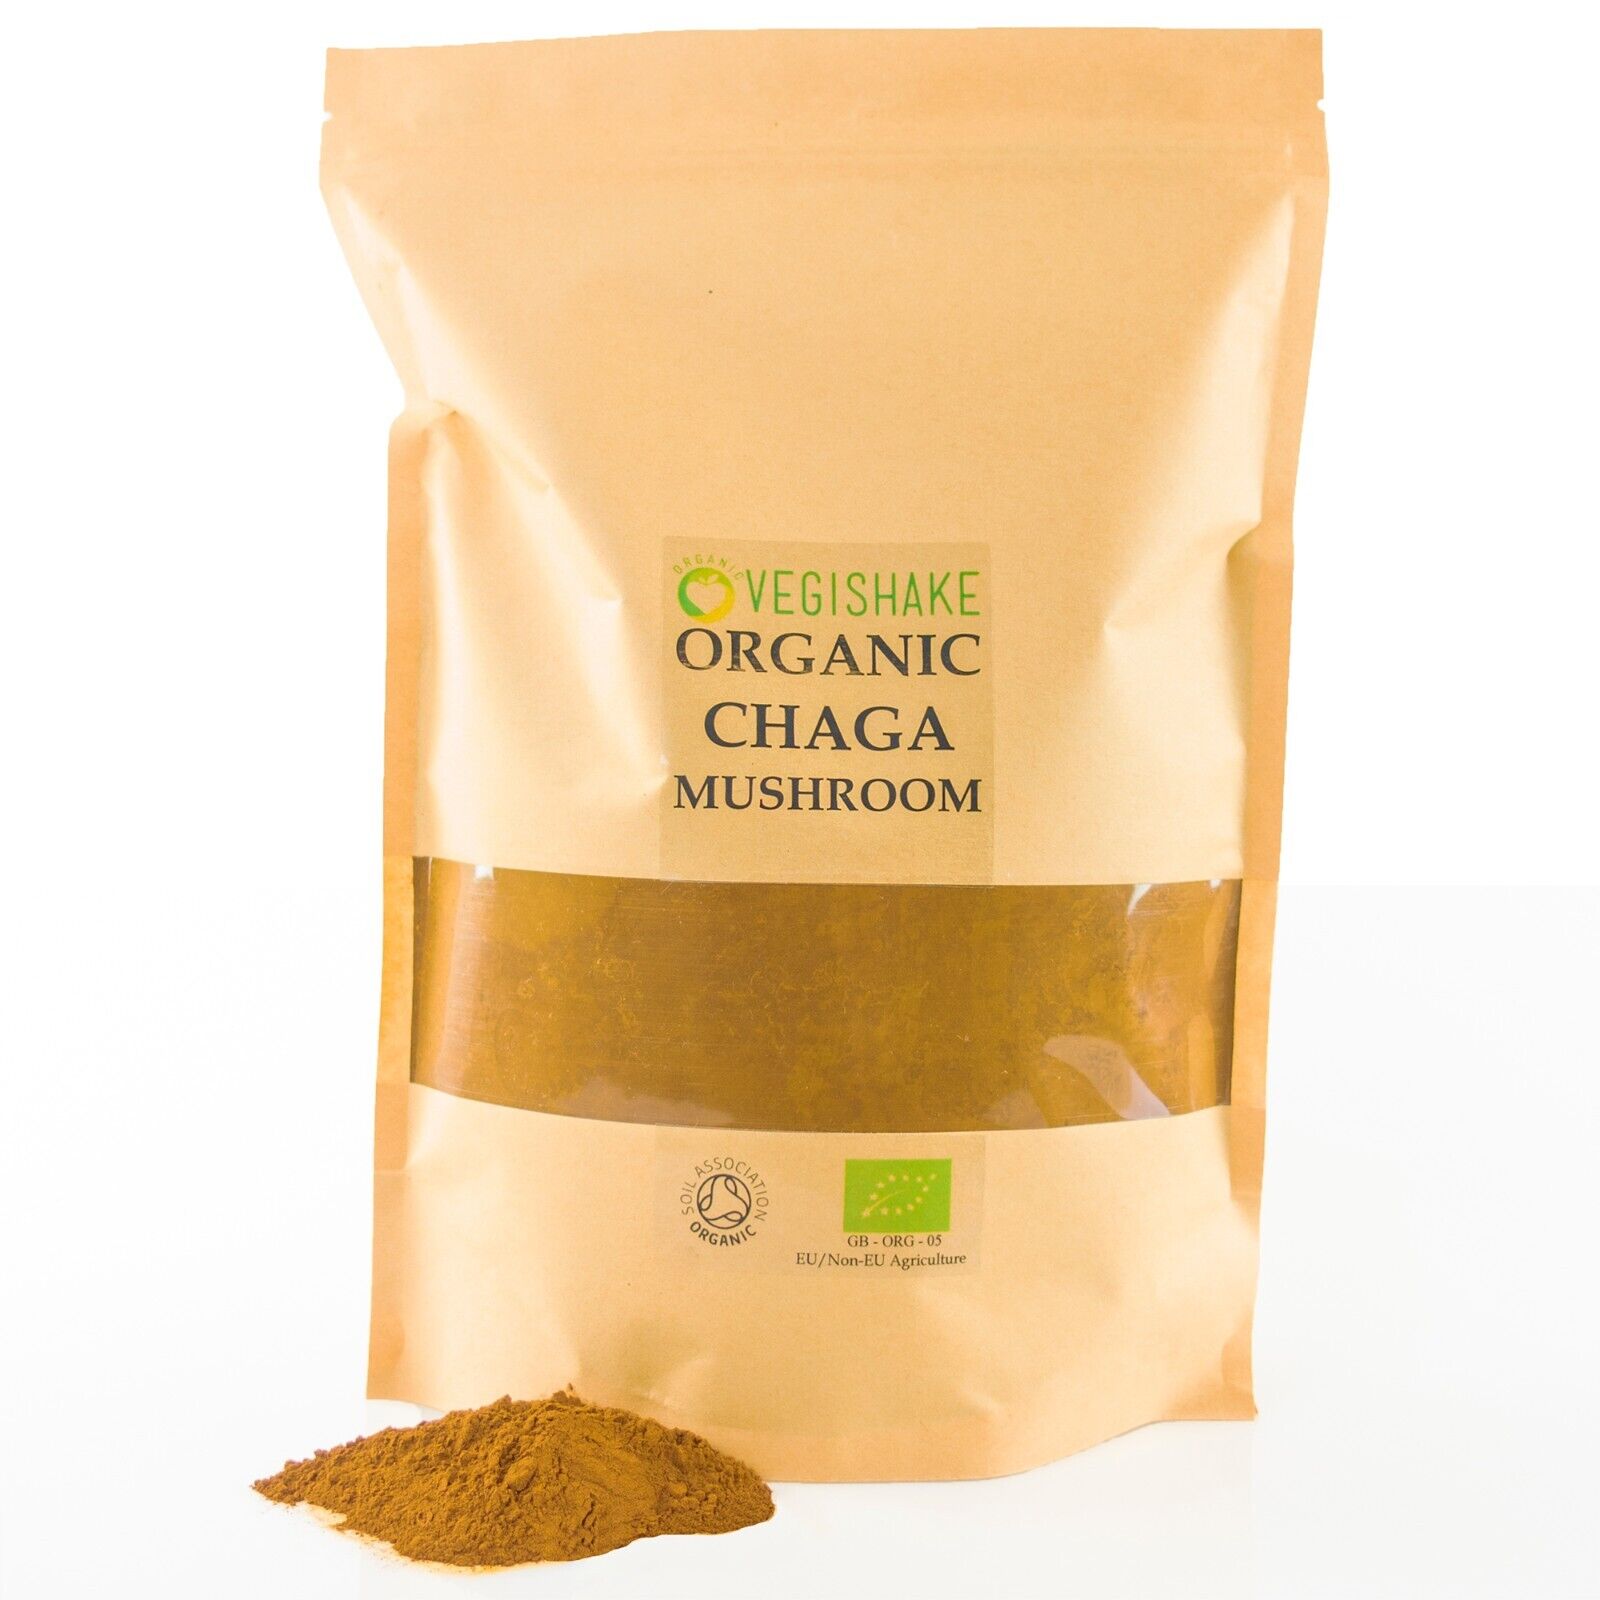 Organic Chaga Mushroom Powder Inonotus obliquus Betulinic Acid Fruiting Body